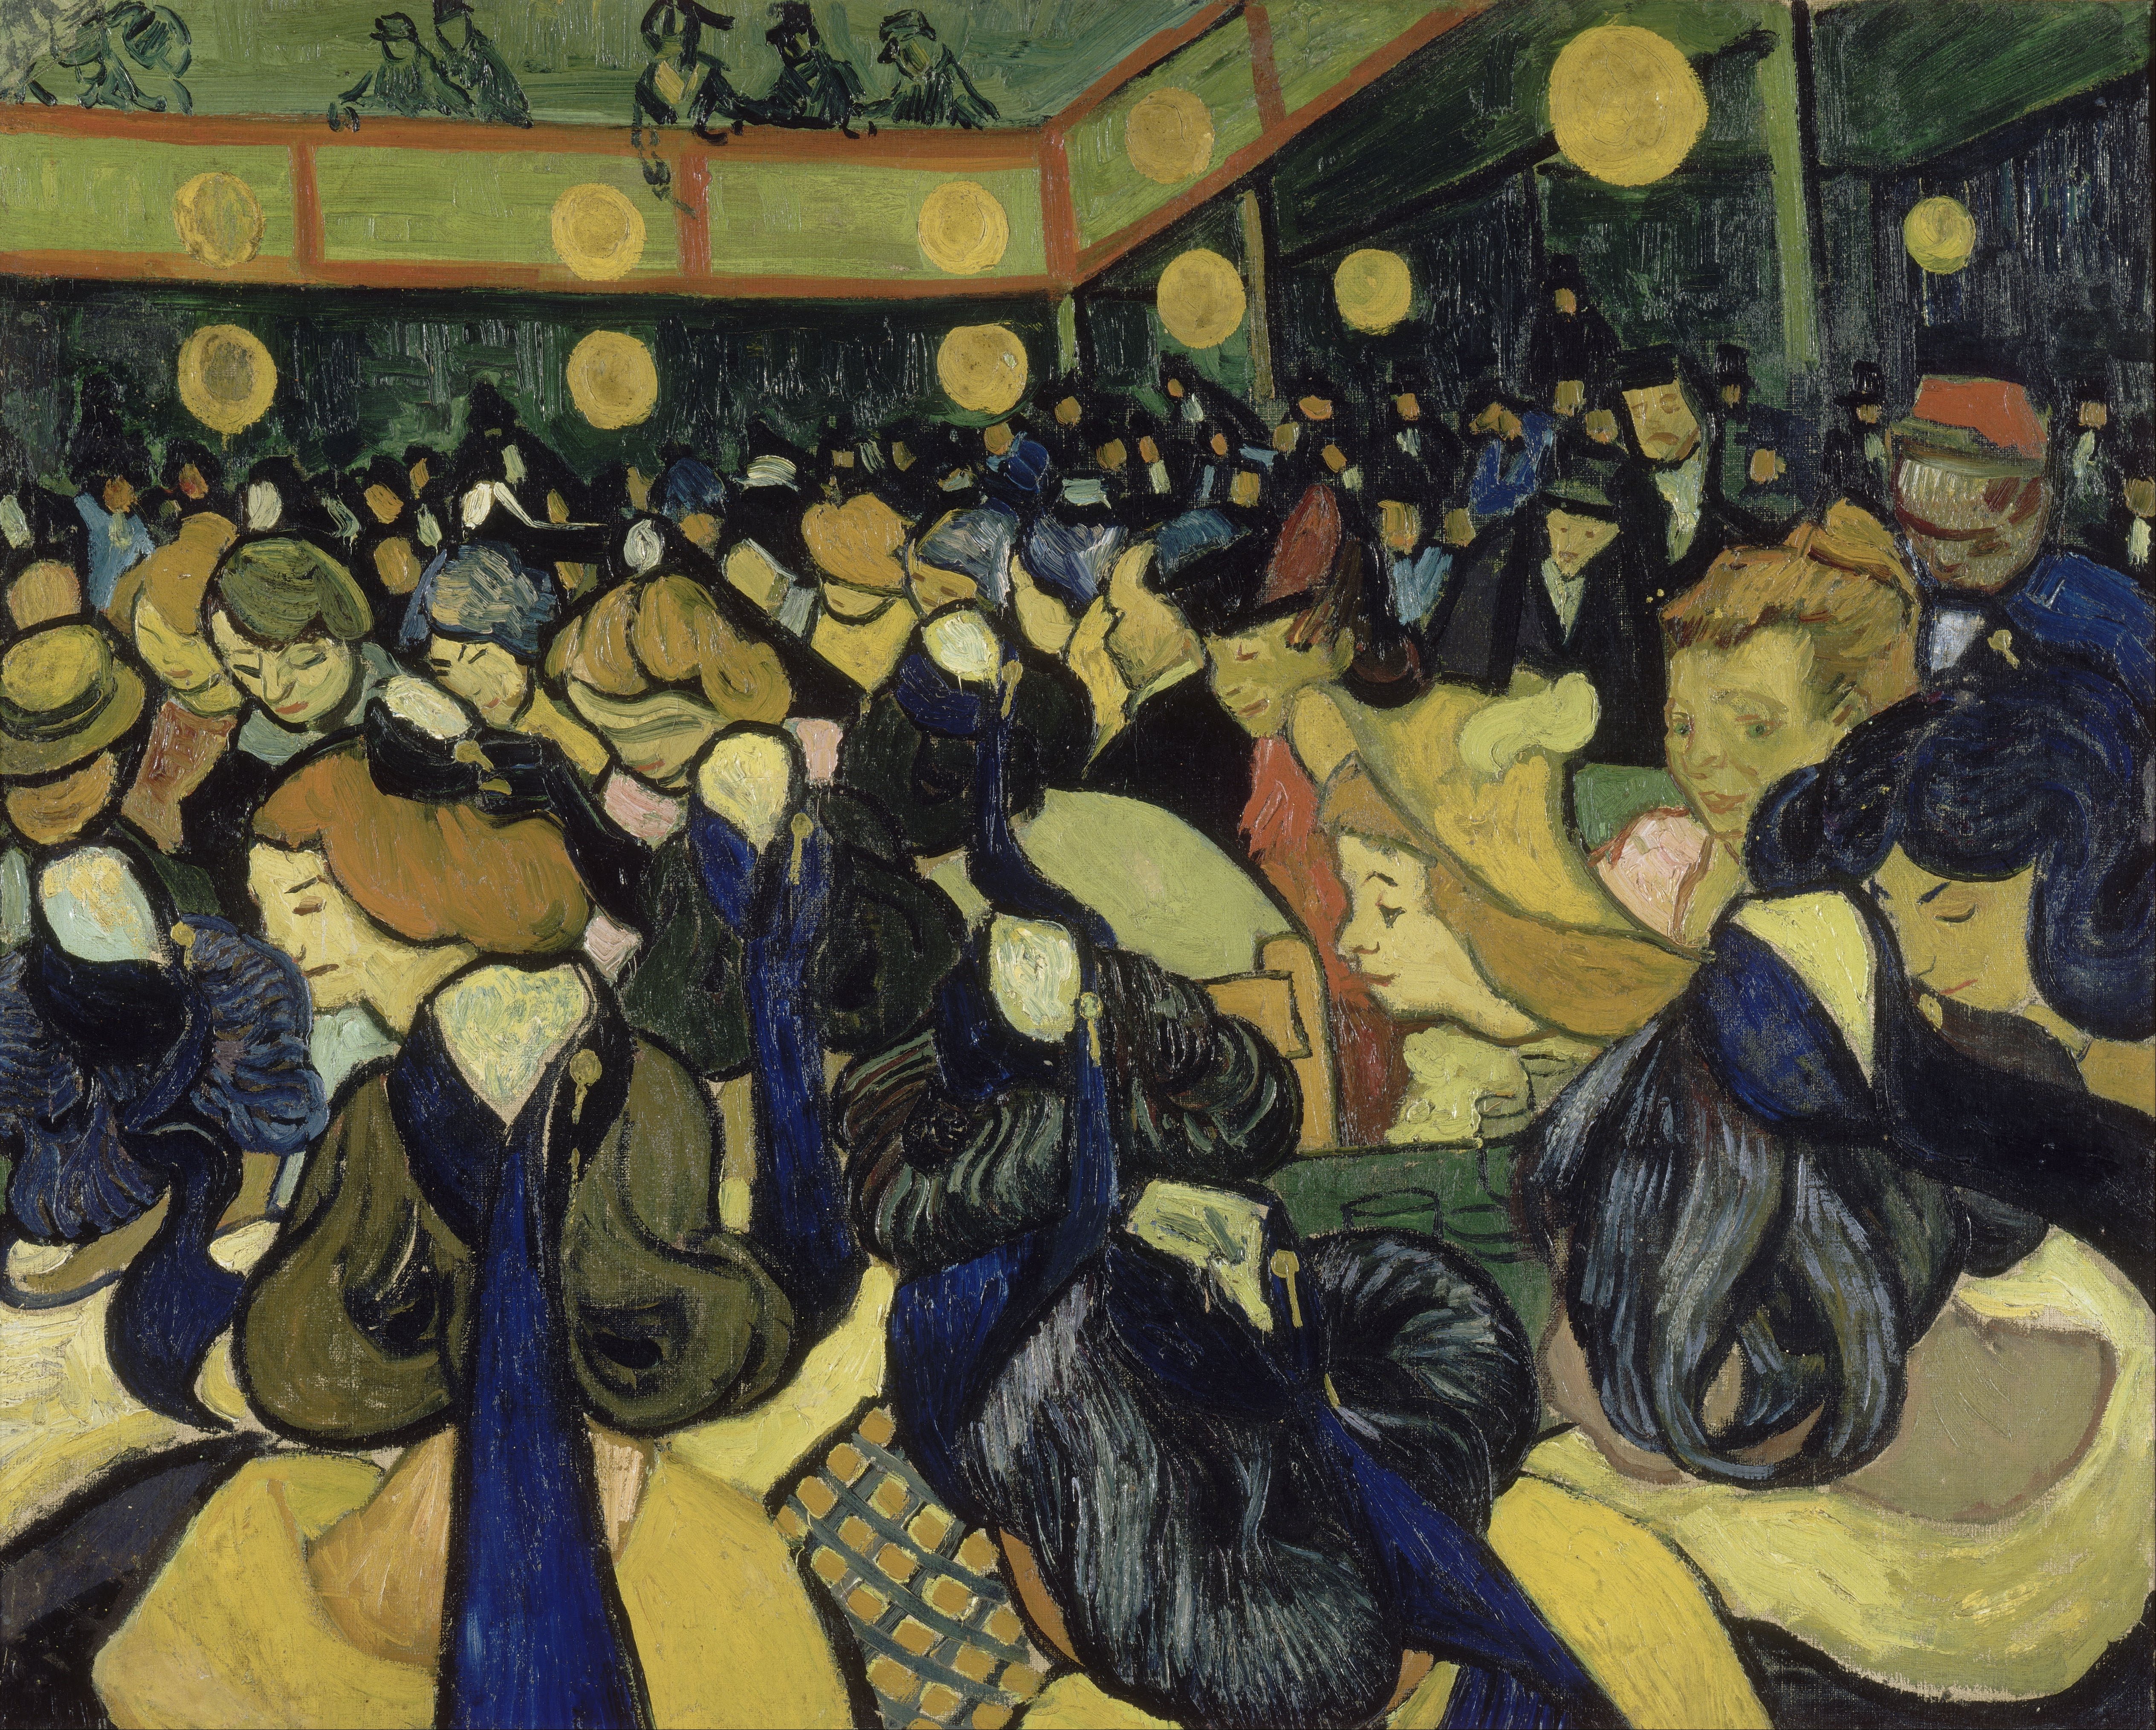 El salón de baile en Arles by Vincent van Gogh - 1888 Musée d'Orsay